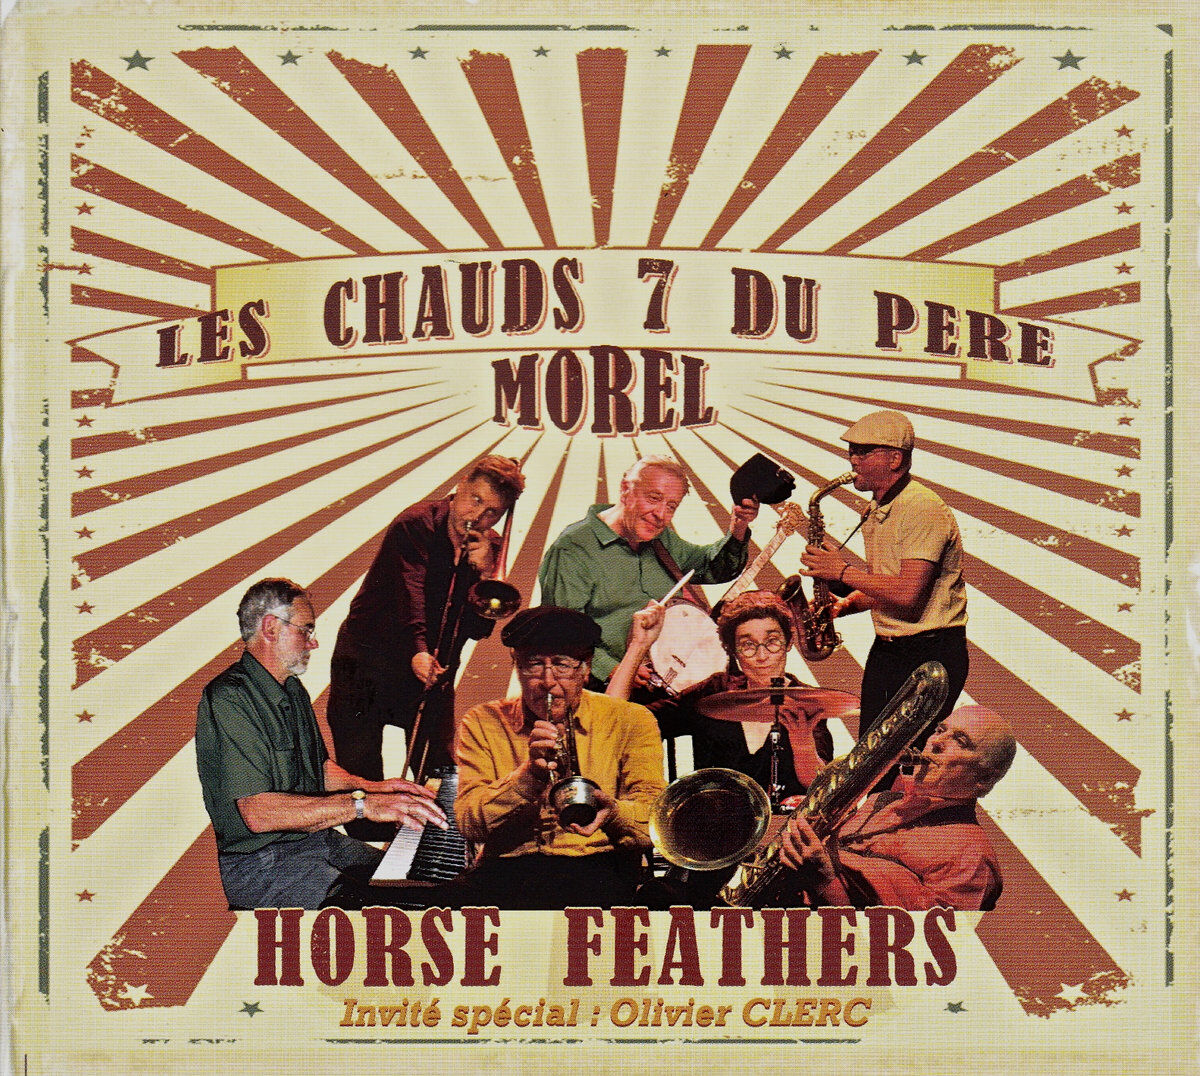 Les Chauds 7 Du Pere Morel • Horse Feathers